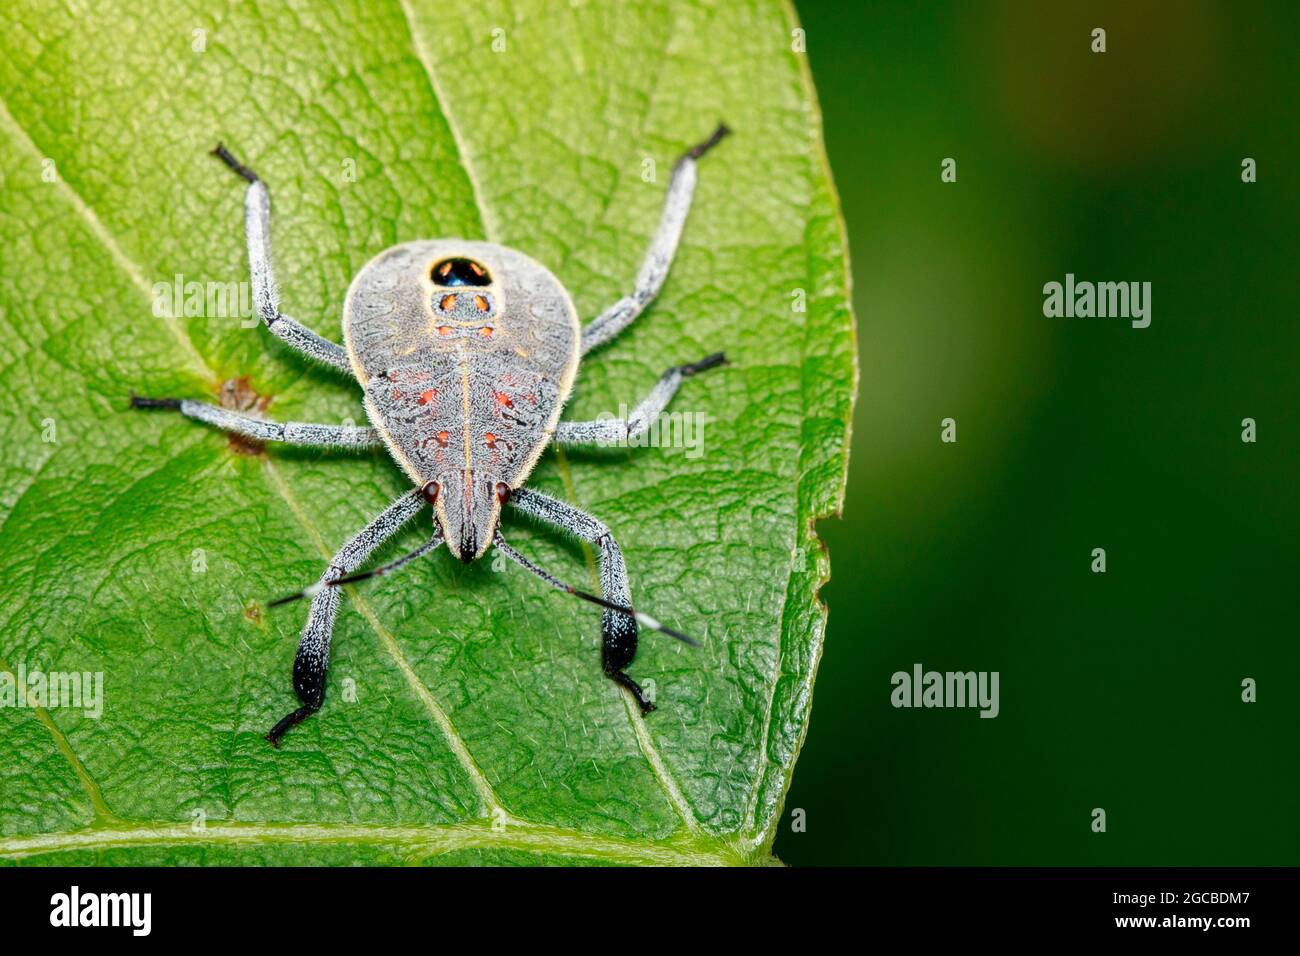 Image d'un insecte d'Hemiptera sur les feuilles vertes. Insecte. Animal Banque D'Images